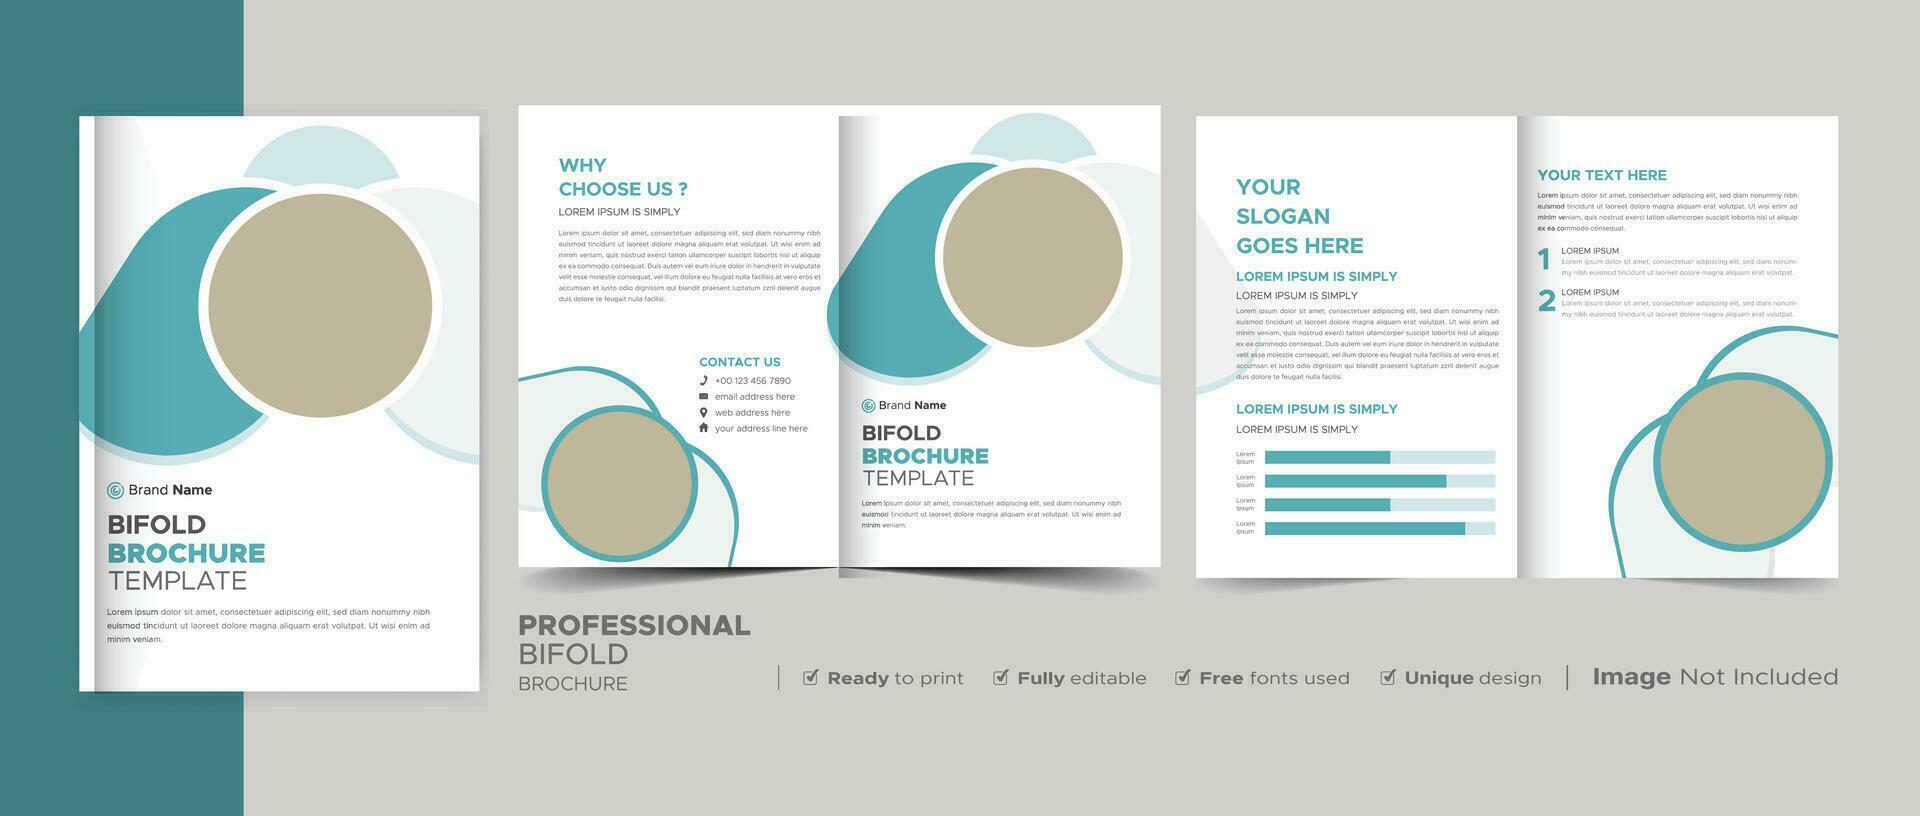 Plantilla de folleto tríptico de negocios modernos corporativos creativos, diseño tríptico, carta, folleto de tamaño a4. vector